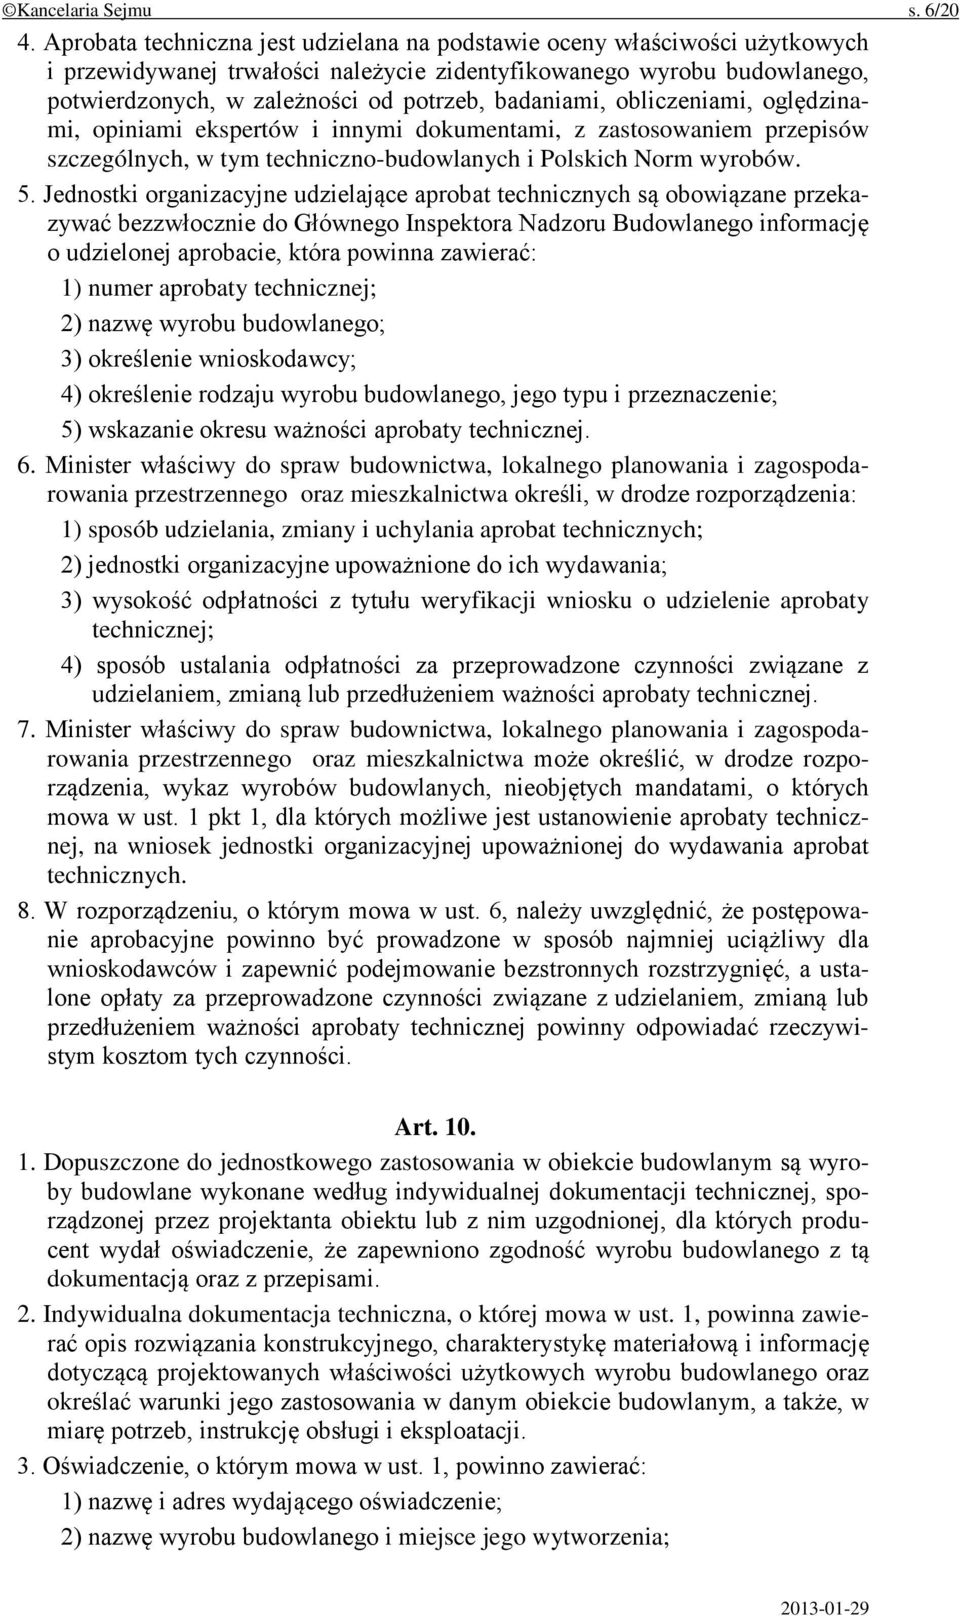 badaniami, obliczeniami, oględzinami, opiniami ekspertów i innymi dokumentami, z zastosowaniem przepisów szczególnych, w tym techniczno-budowlanych i Polskich Norm wyrobów. 5.